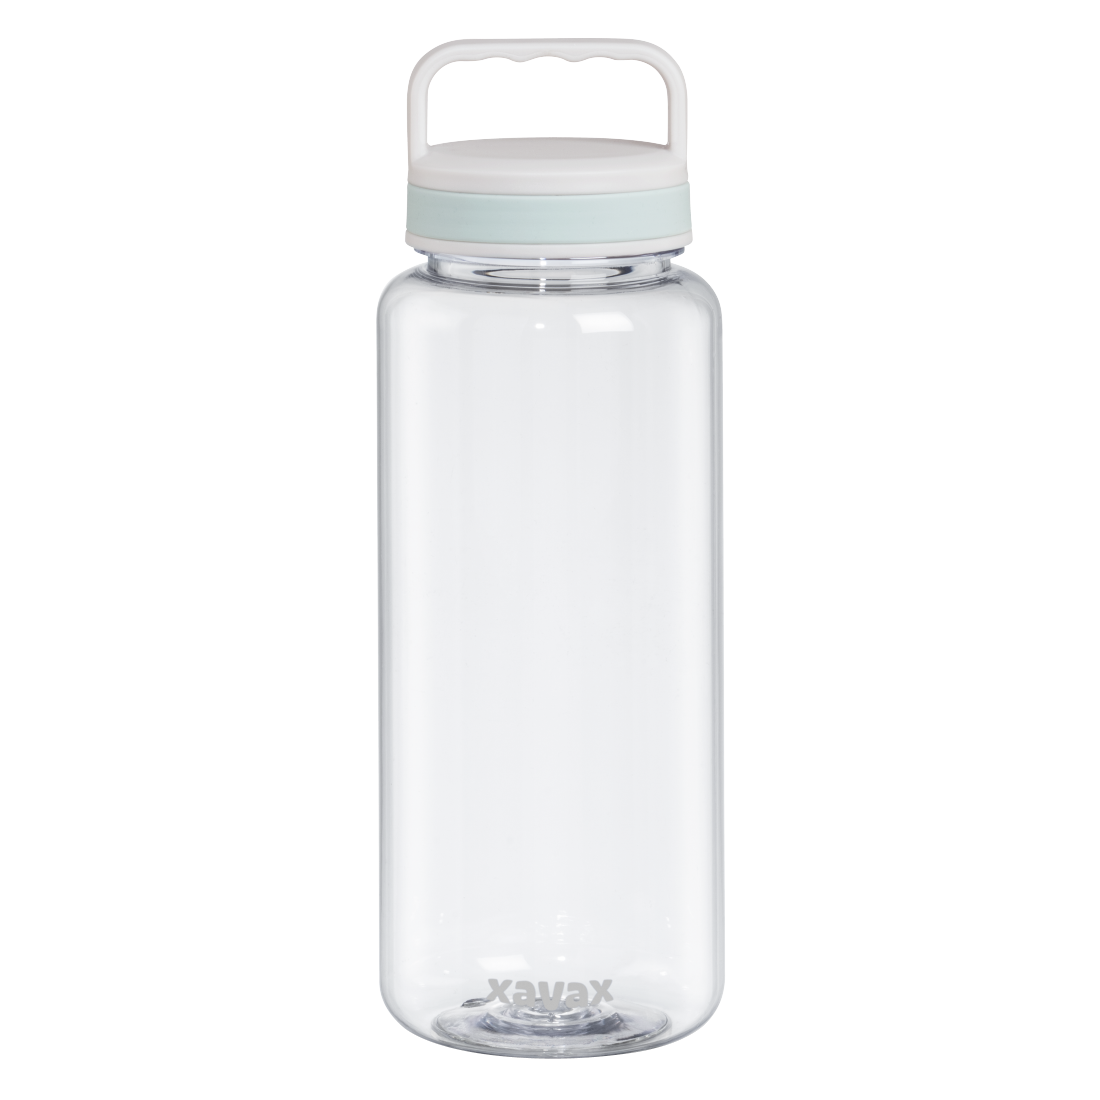 abx Druckfähige Abbildung - Xavax, Trinkflasche, 1250ml, auslaufsicher, Henkel, Schraubverschluss, Transparent